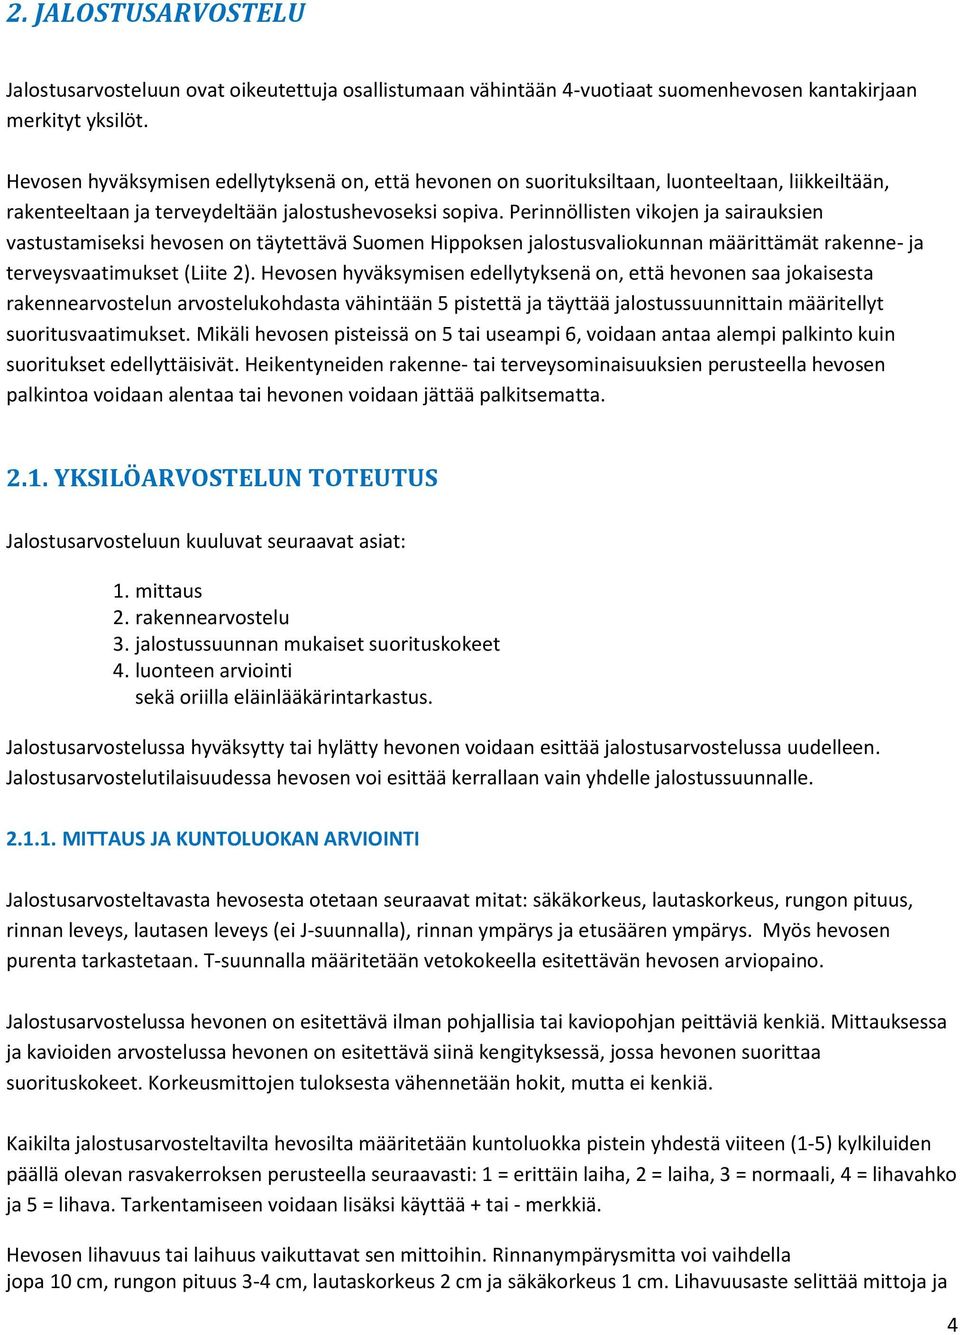 Perinnöllisten vikojen ja sairauksien vastustamiseksi hevosen on täytettävä Suomen Hippoksen jalostusvaliokunnan määrittämät rakenne- ja terveysvaatimukset (Liite 2).